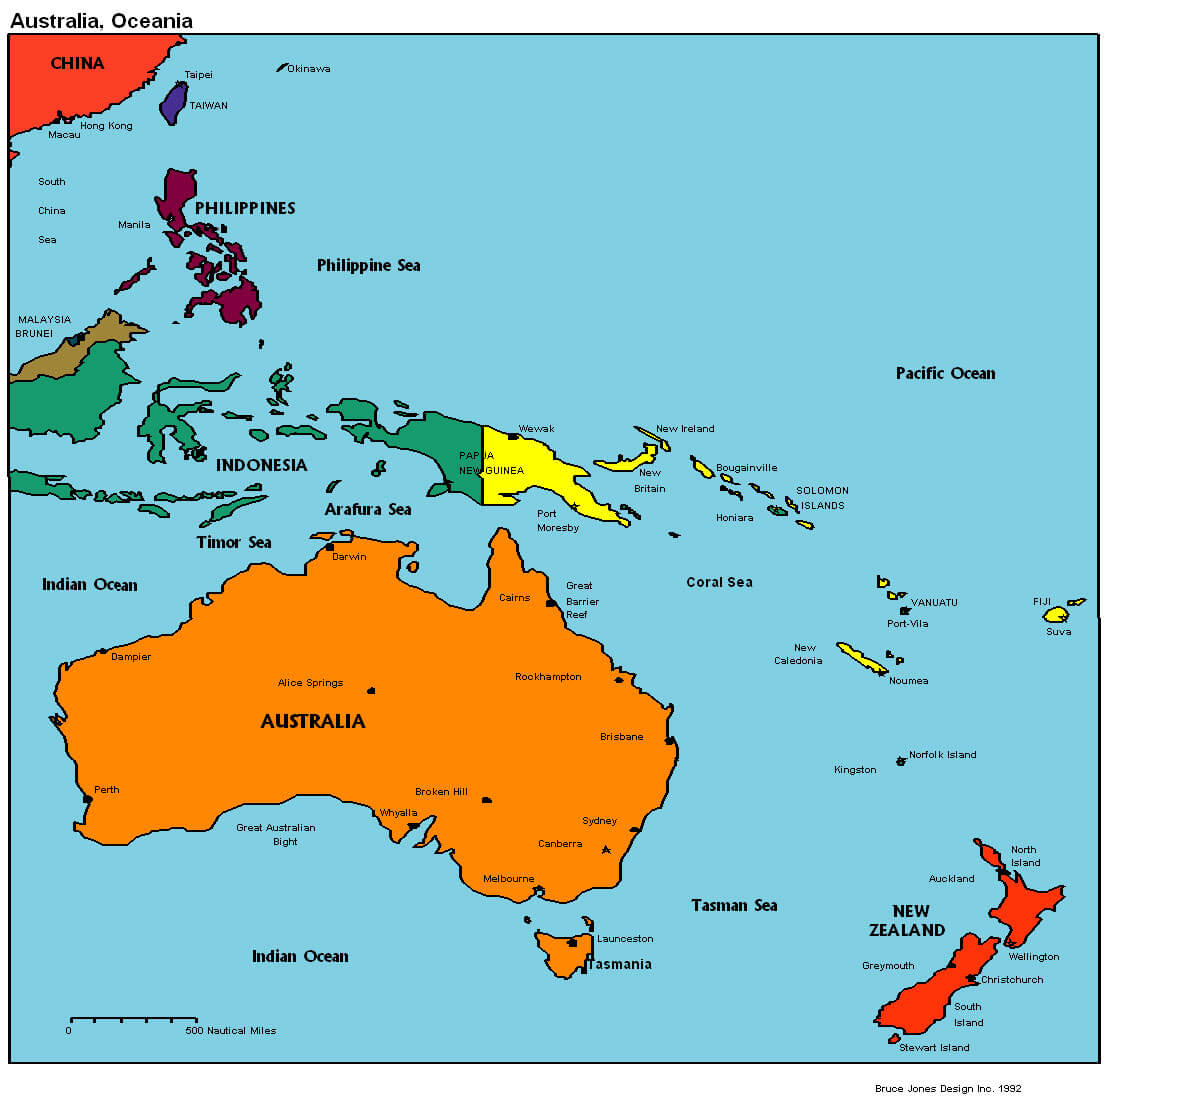 australia oceania map